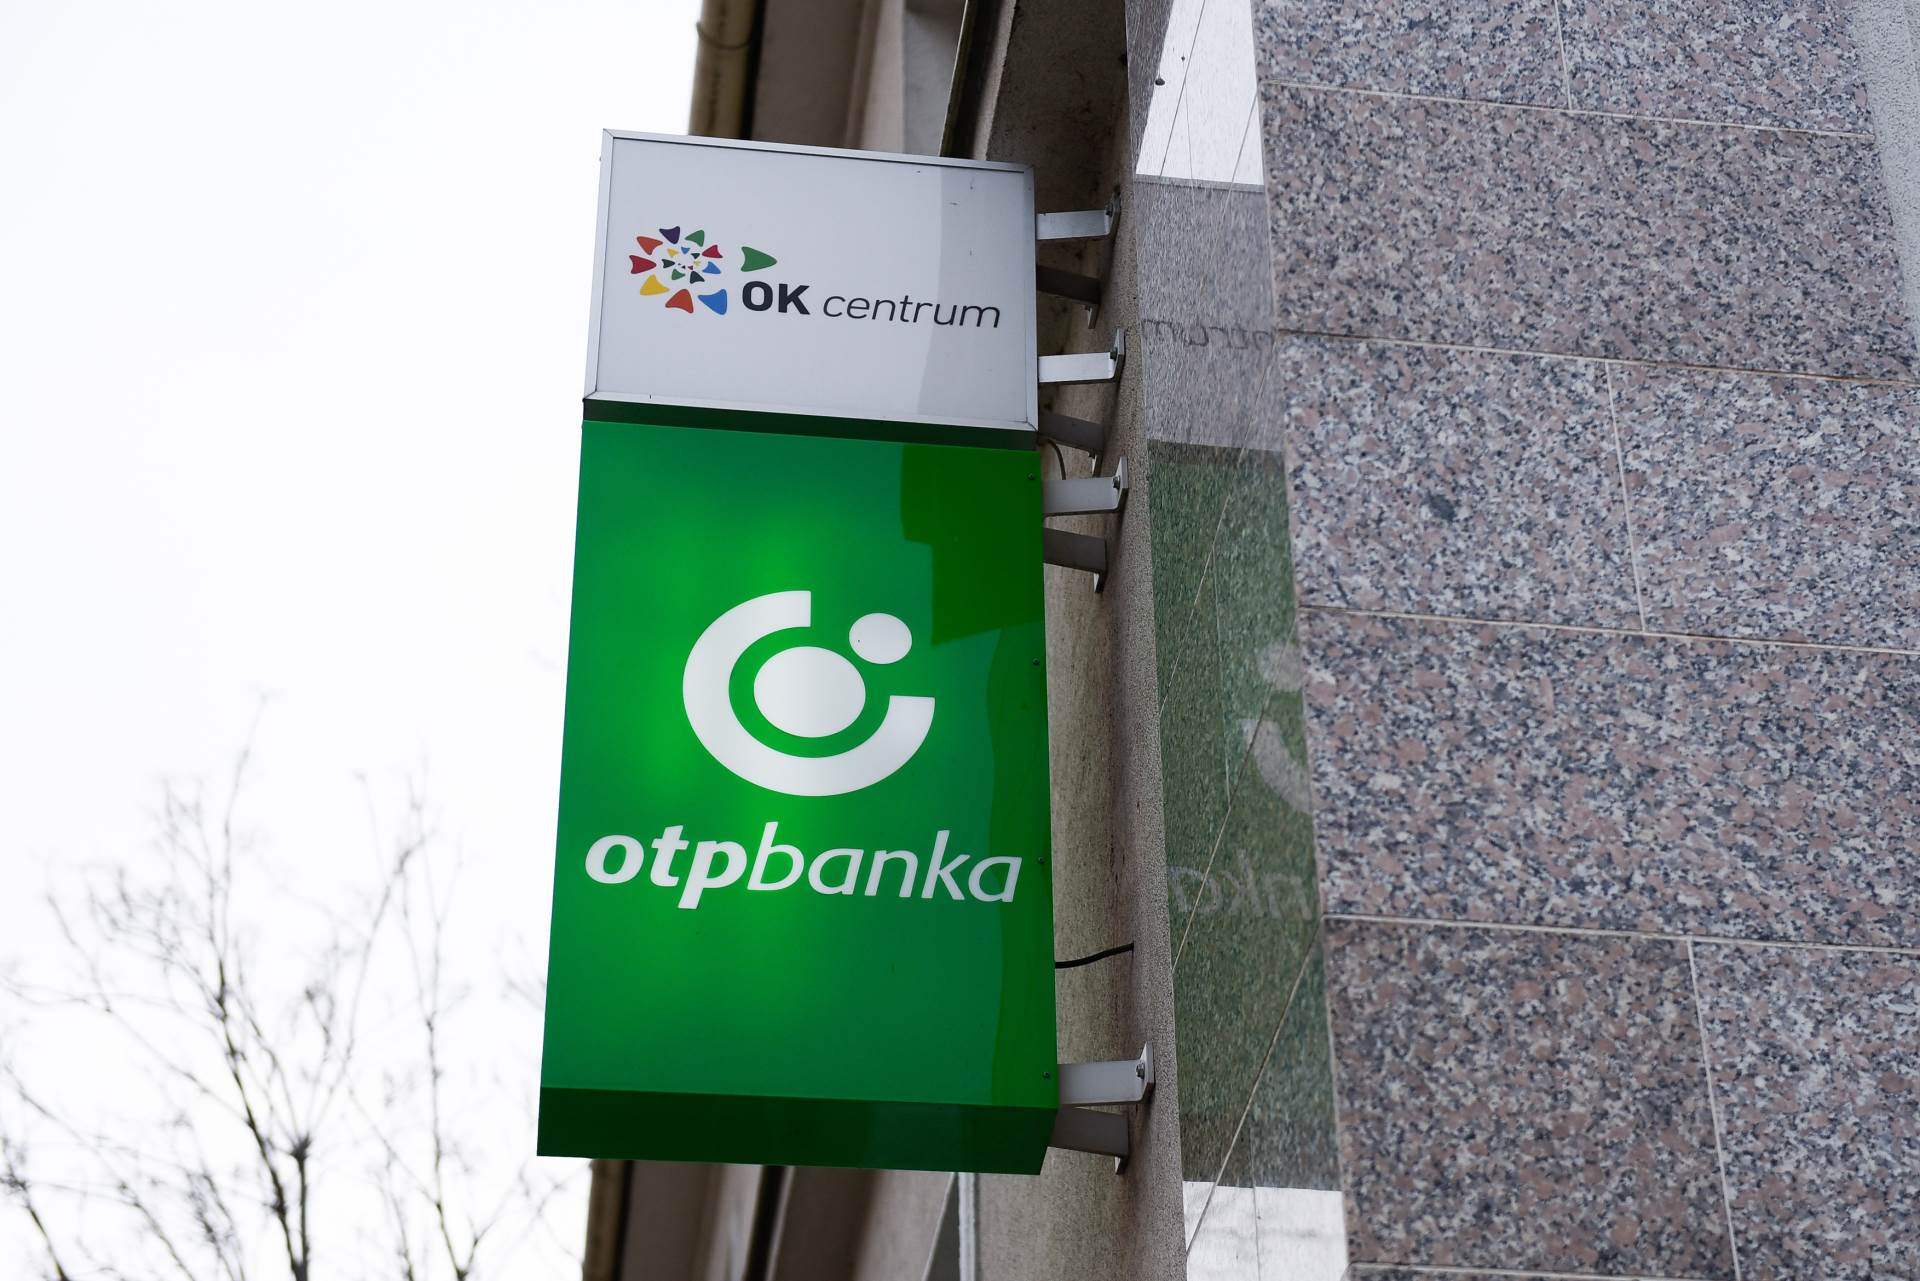 OTP banka donira 1,5 milijun kuna zagrebačkim bolnicama